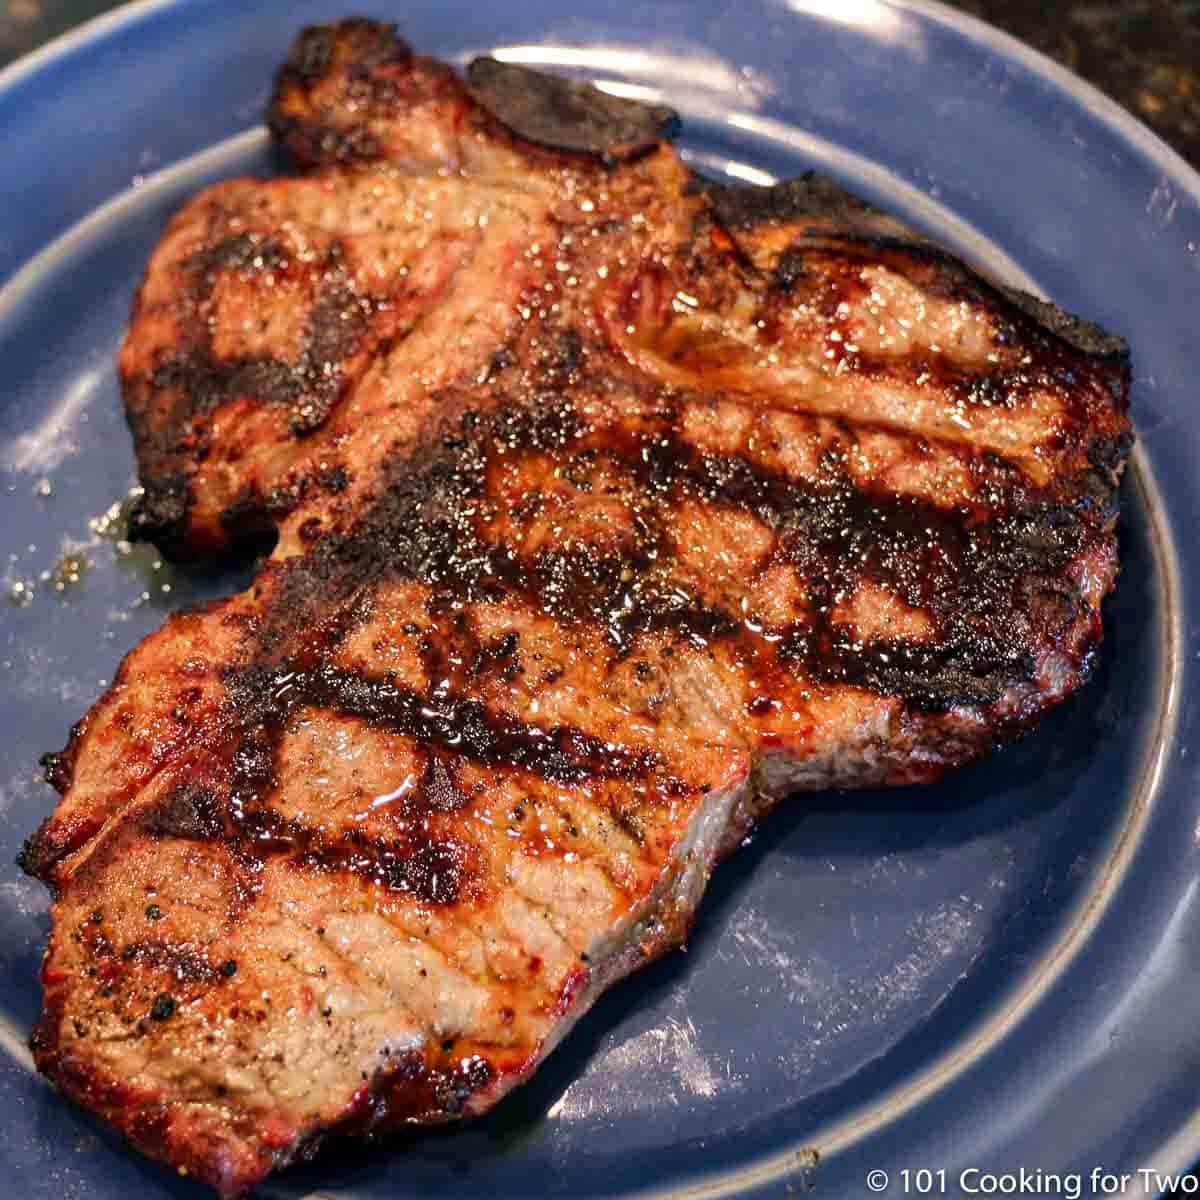 porterhouse steak on blue plate